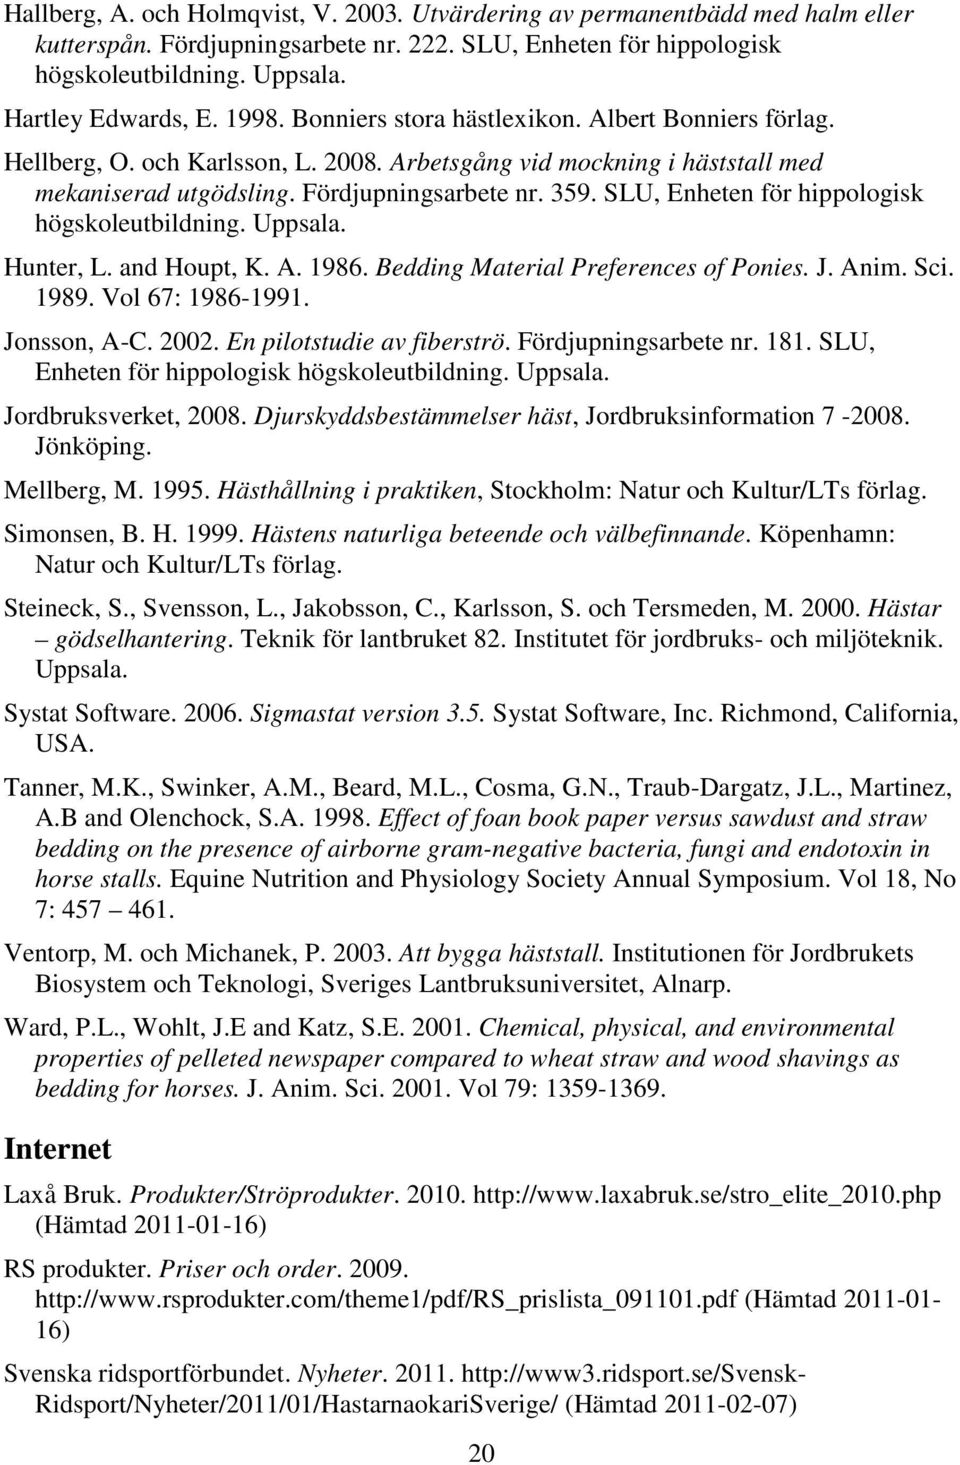 SLU, Enheten för hippologisk högskoleutbildning. Uppsala. Hunter, L. and Houpt, K. A. 1986. Bedding Material Preferences of Ponies. J. Anim. Sci. 1989. Vol 67: 1986-1991. Jonsson, A-C. 2002.